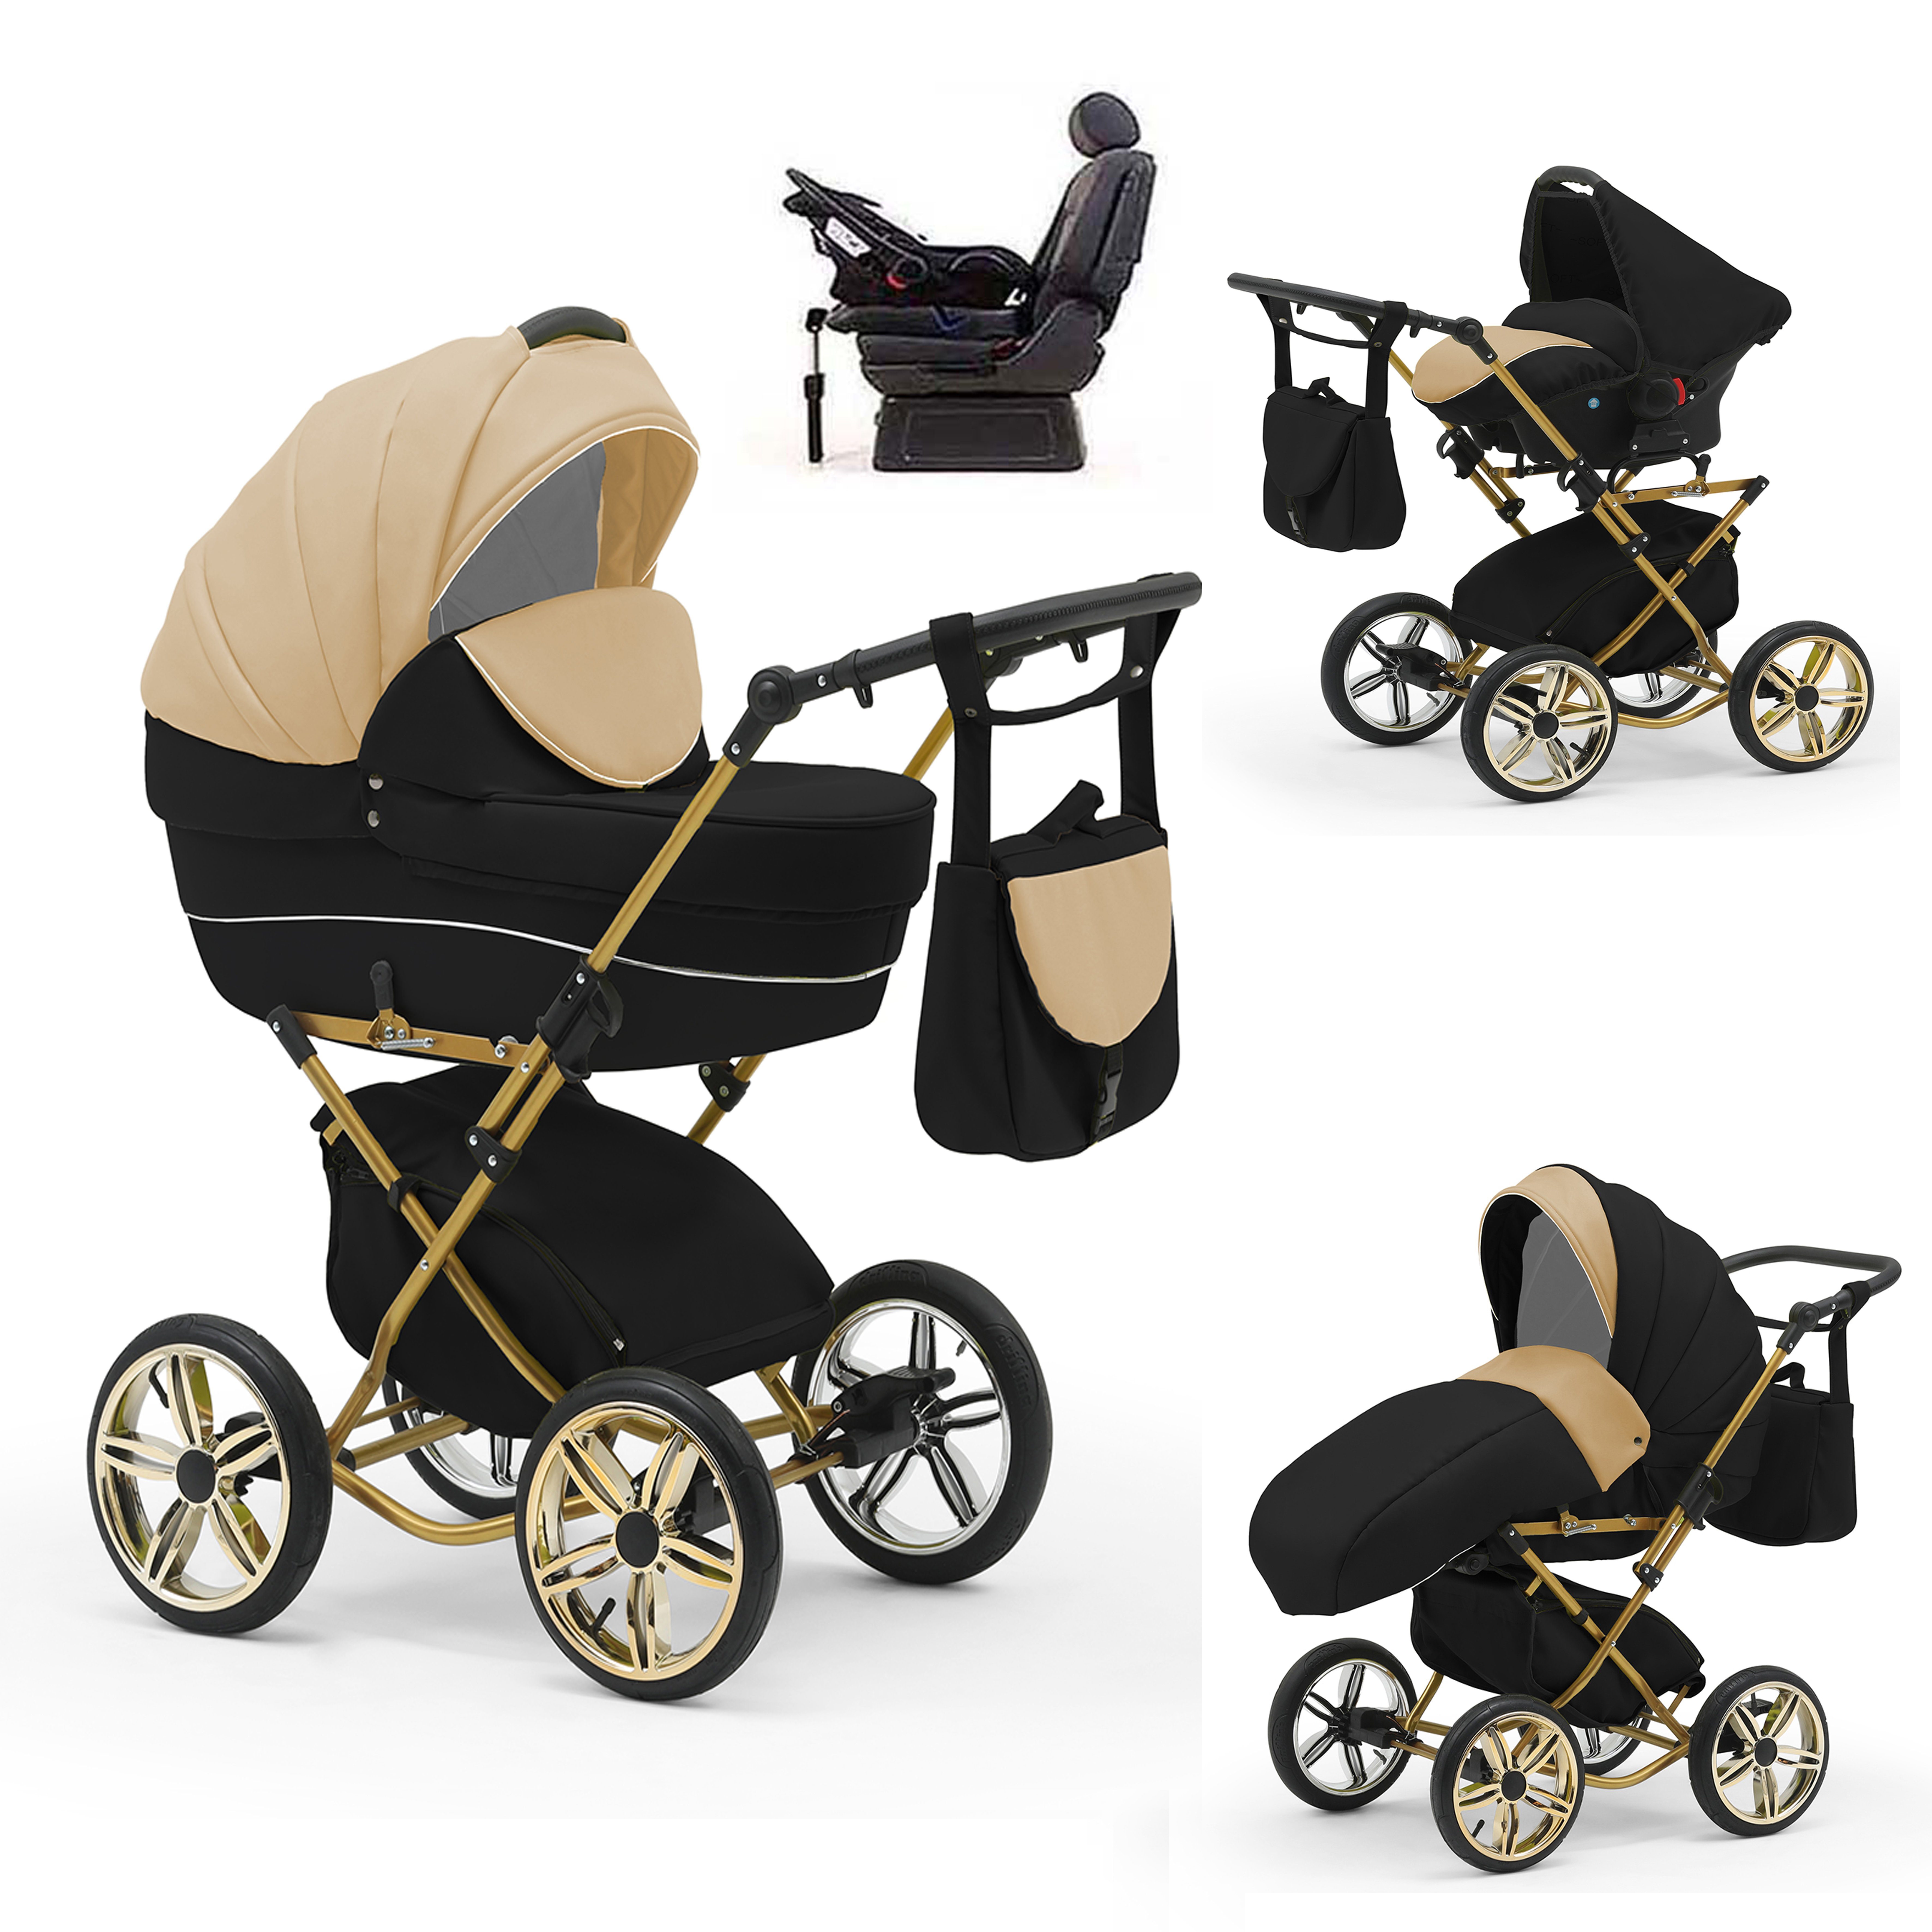 babies-on-wheels Kombi-Kinderwagen Sorento 4 in 1 inkl. Autositz und Iso Base - 14 Teile - in 10 Designs Beige-Schwarz